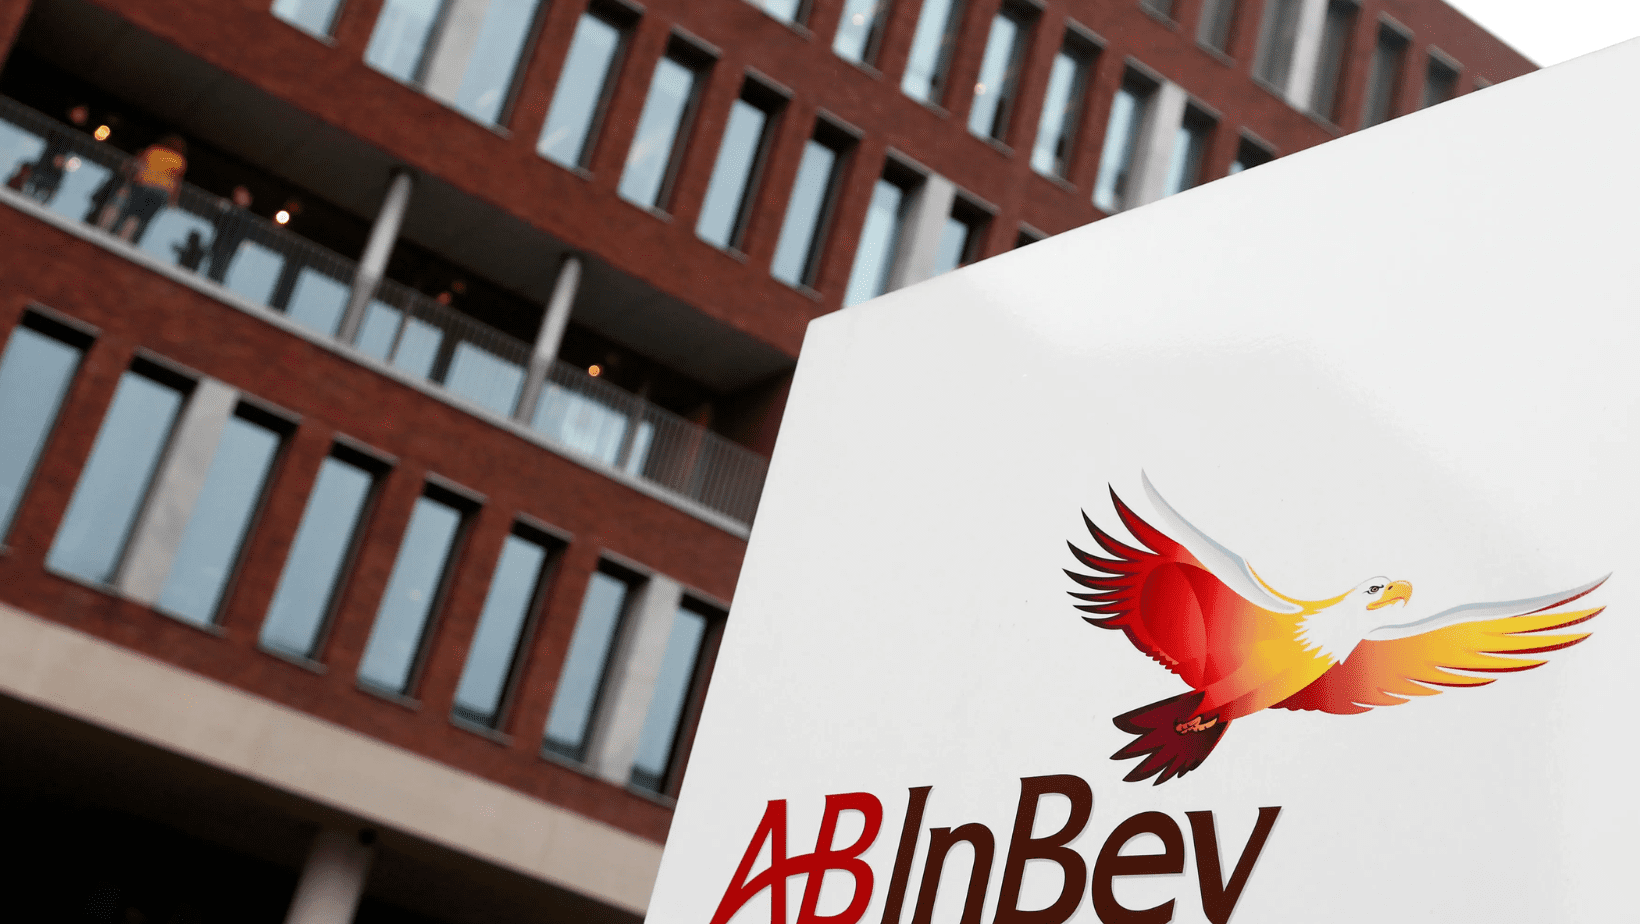 Brewing Power Moves: AB InBev’s Billion-Dollar Share Buy-Back Sends Shockwaves Through Global Markets